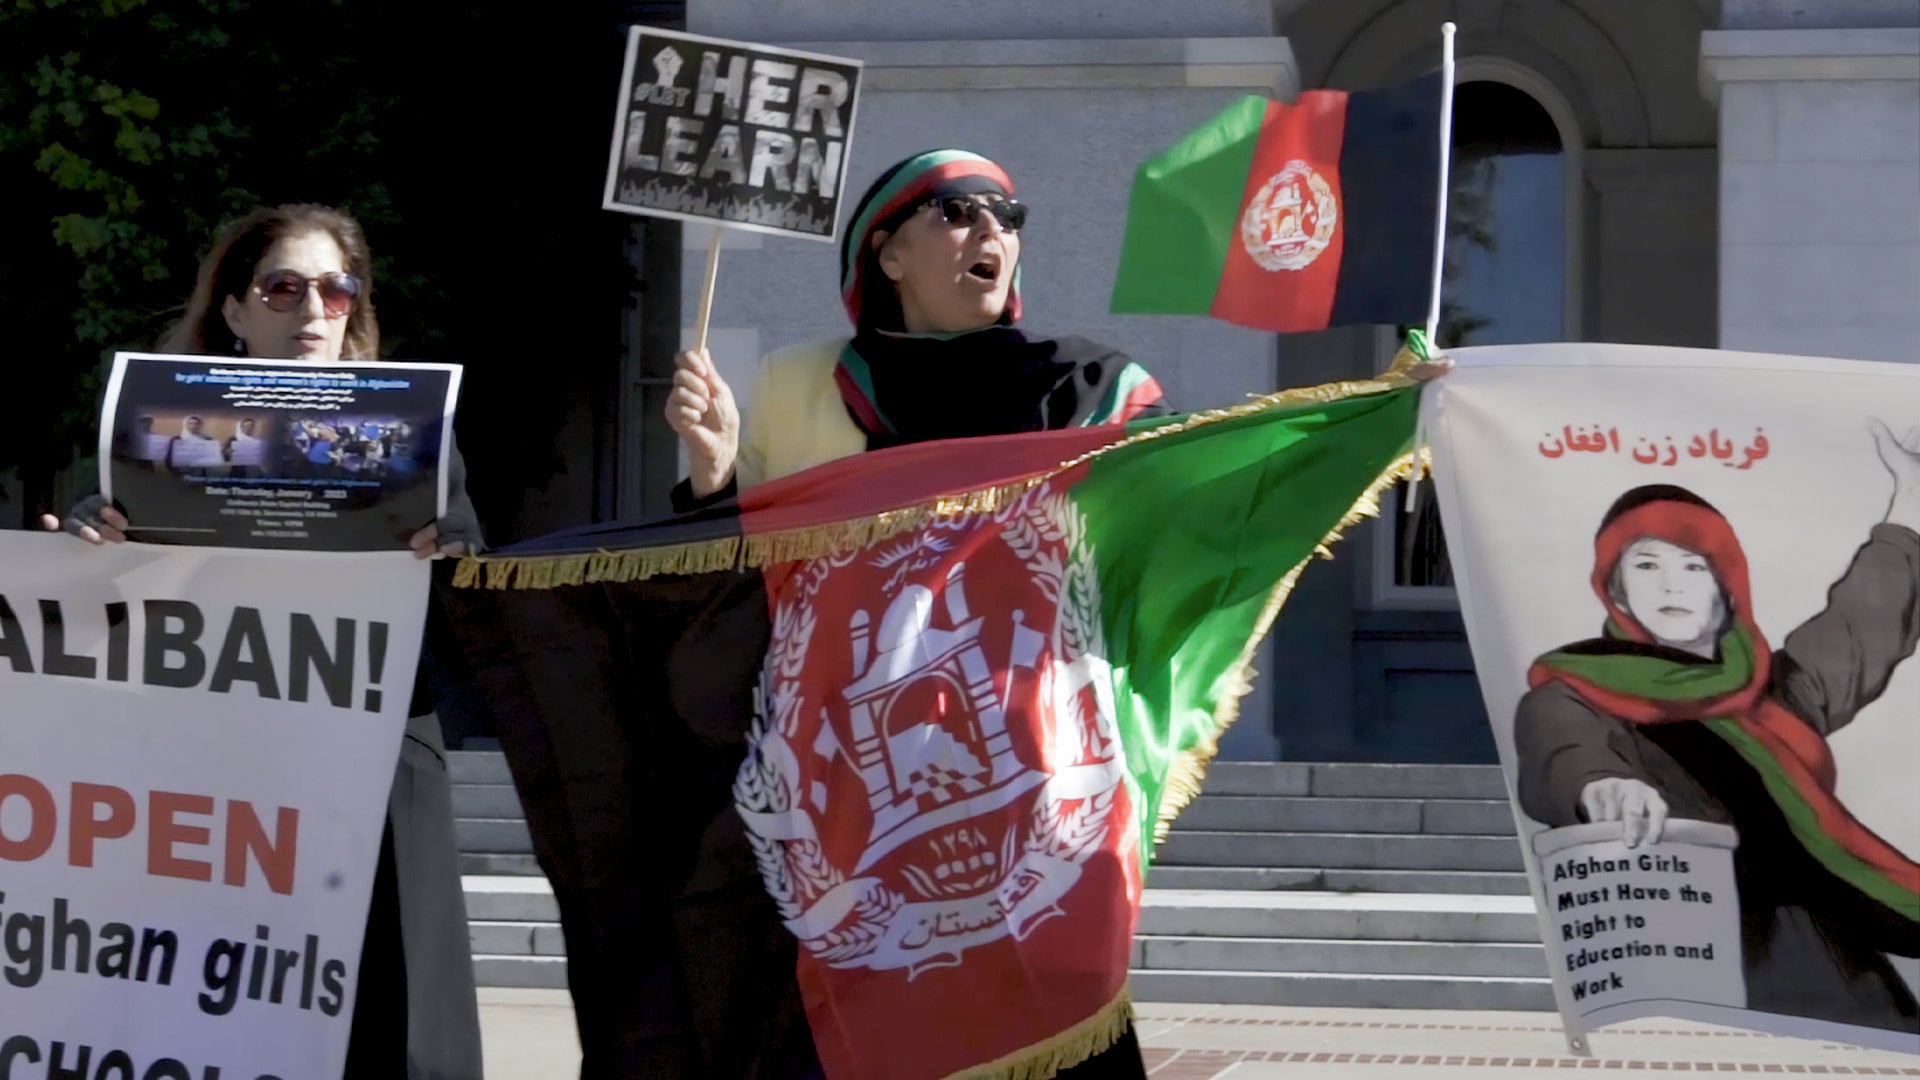  تجمع اعتراضی شهروندان افغان در سکرمنتو